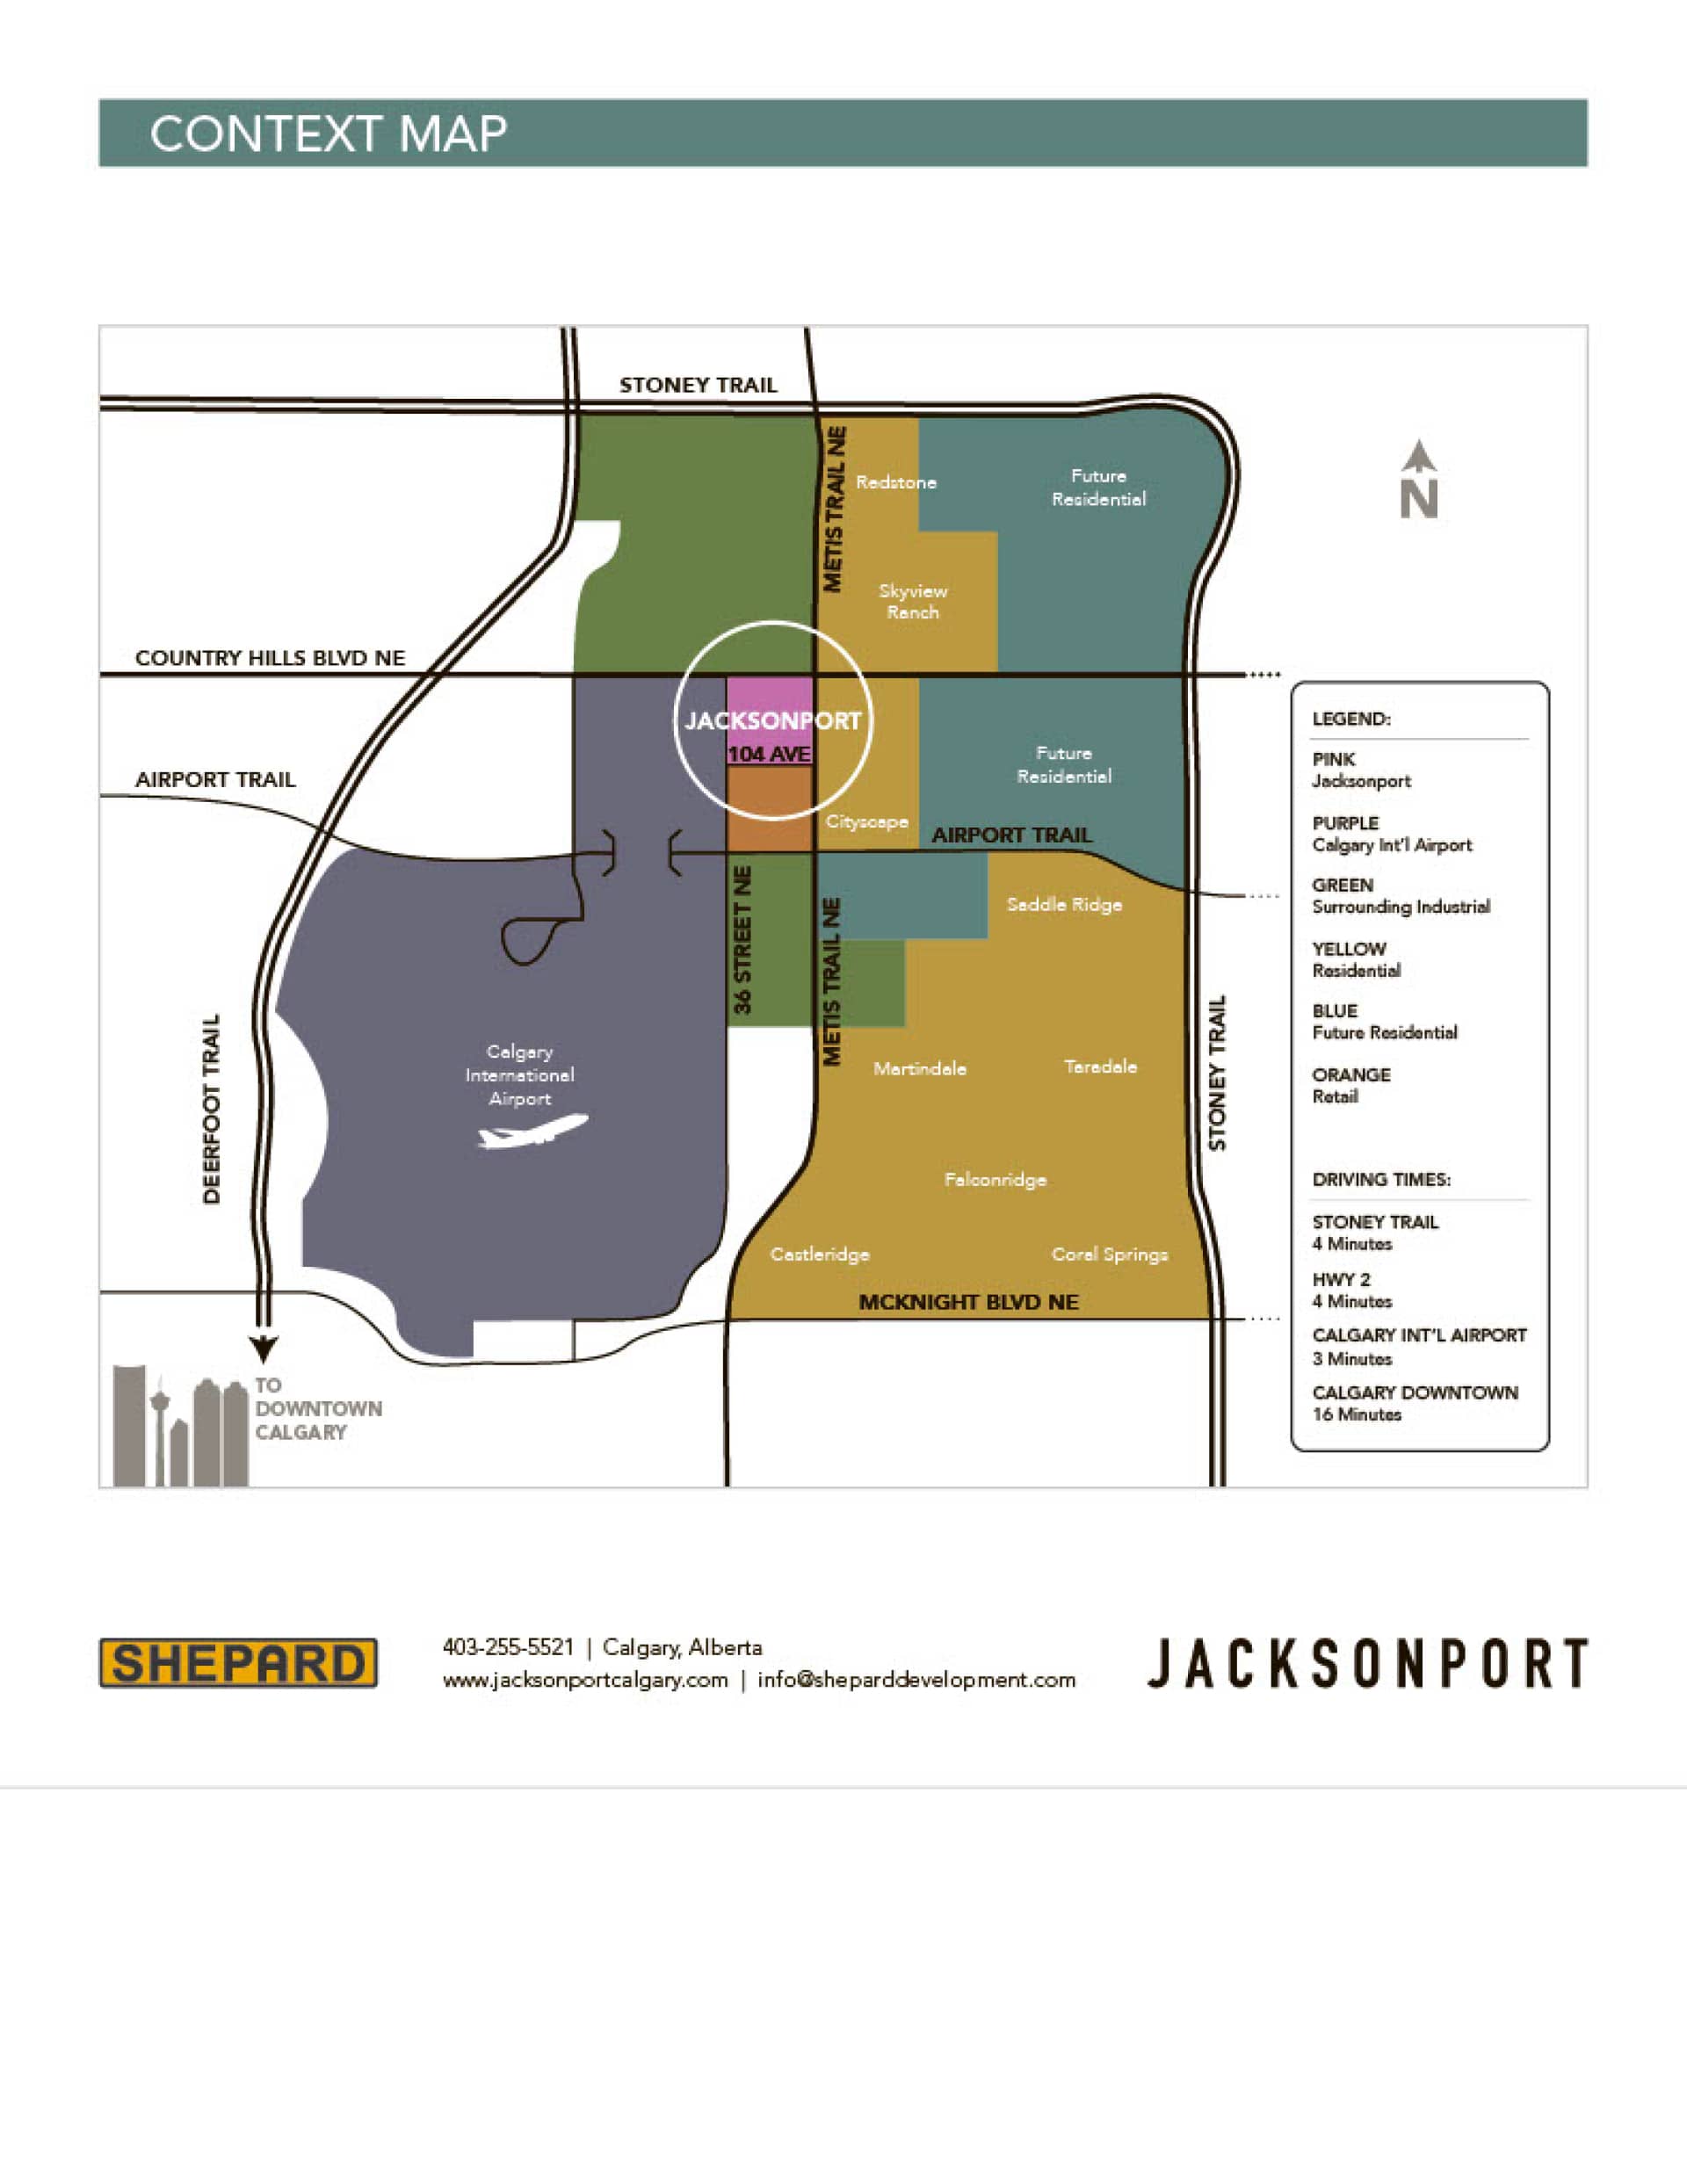 Shepard-Development-Jacksonport-Context-Map1024_1.jpg